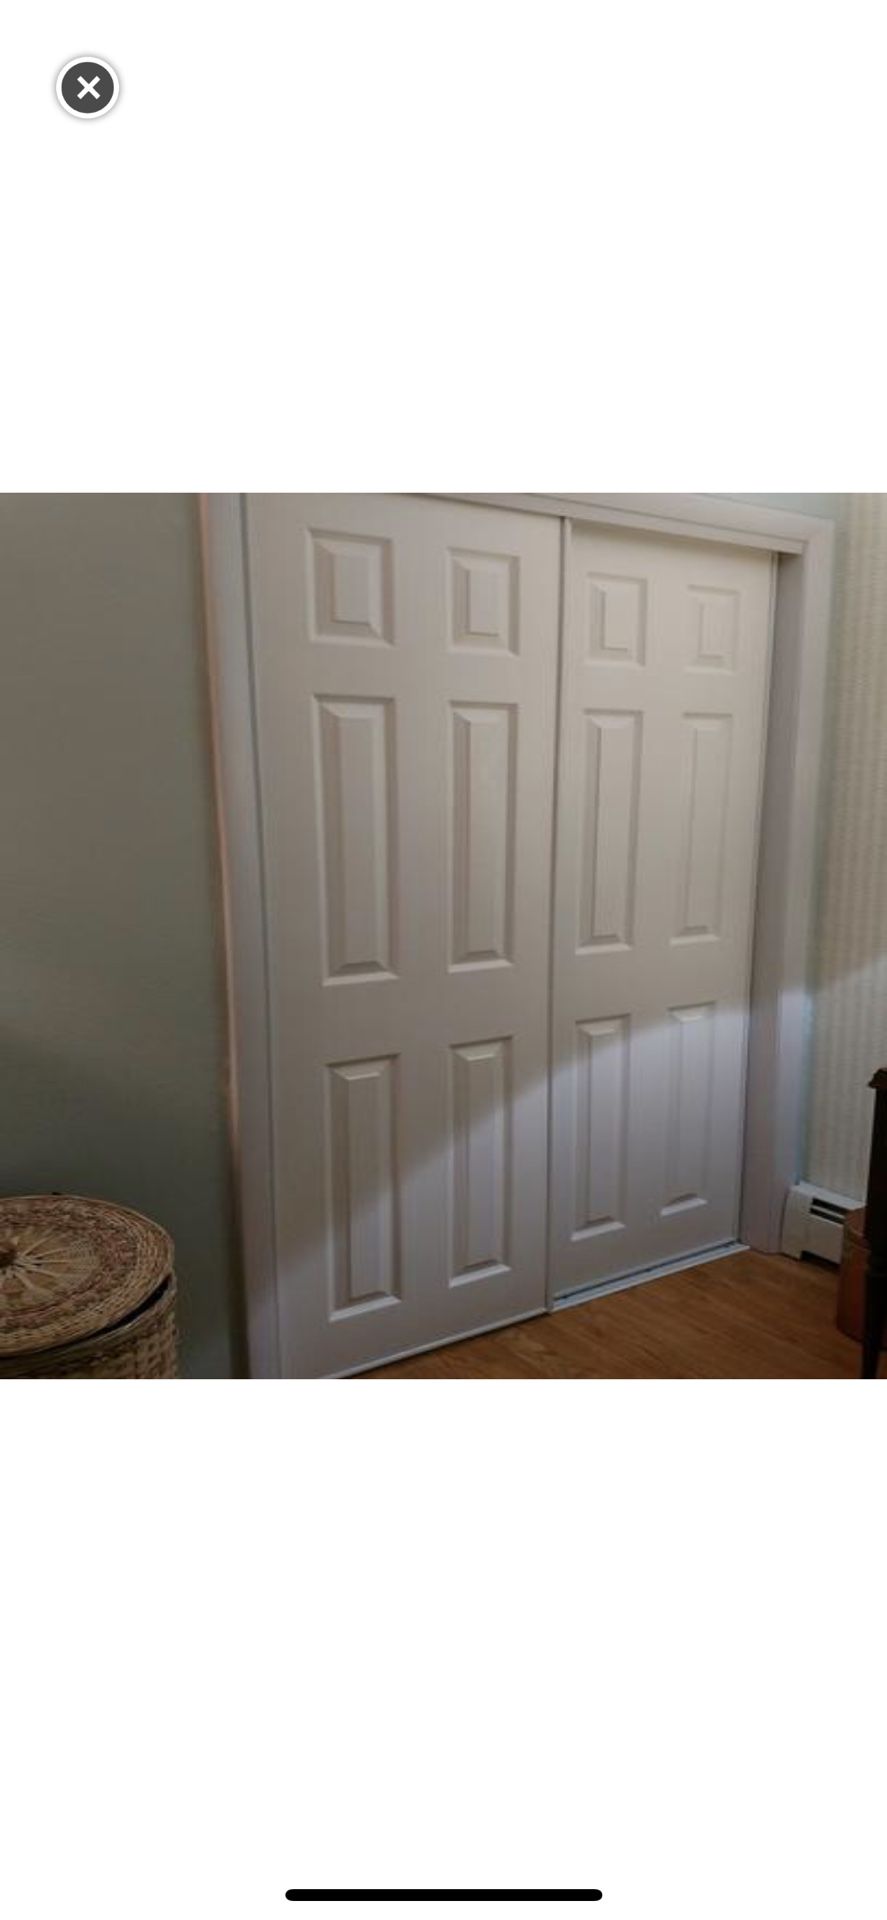 TRUporte 60 in. x 80 in. Composite White Interior Sliding Door